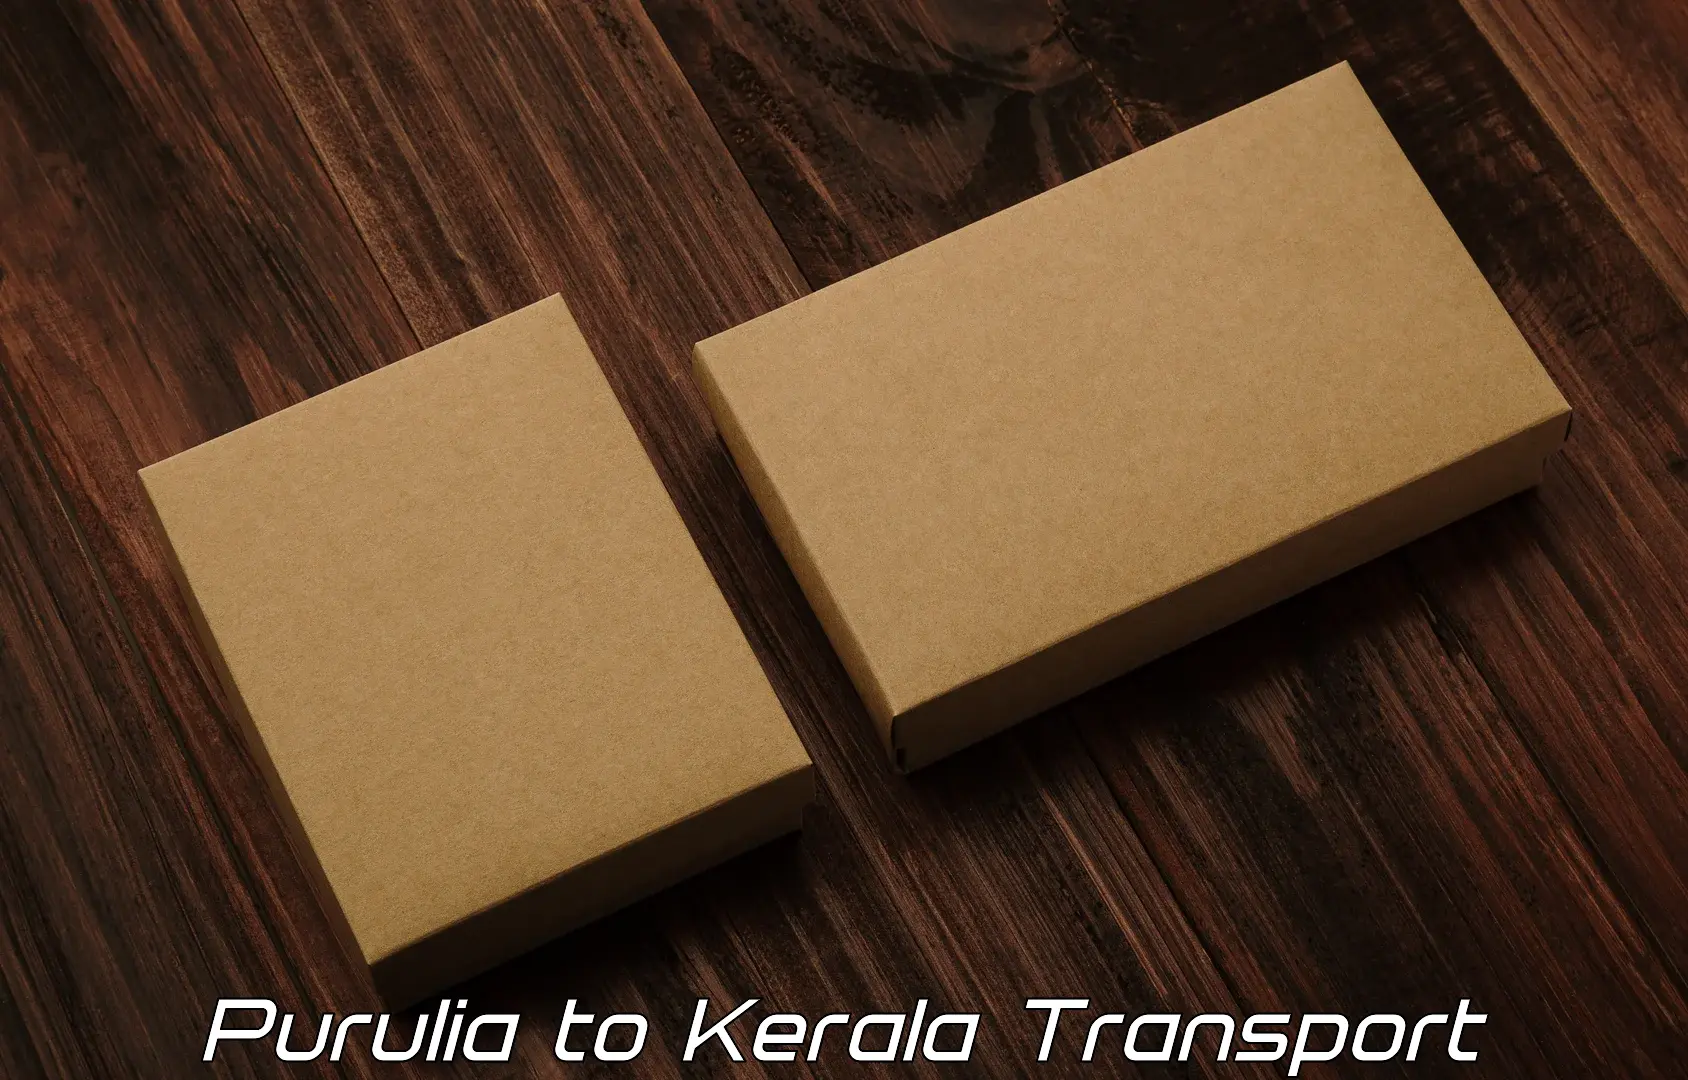 Delivery service Purulia to Manjeri